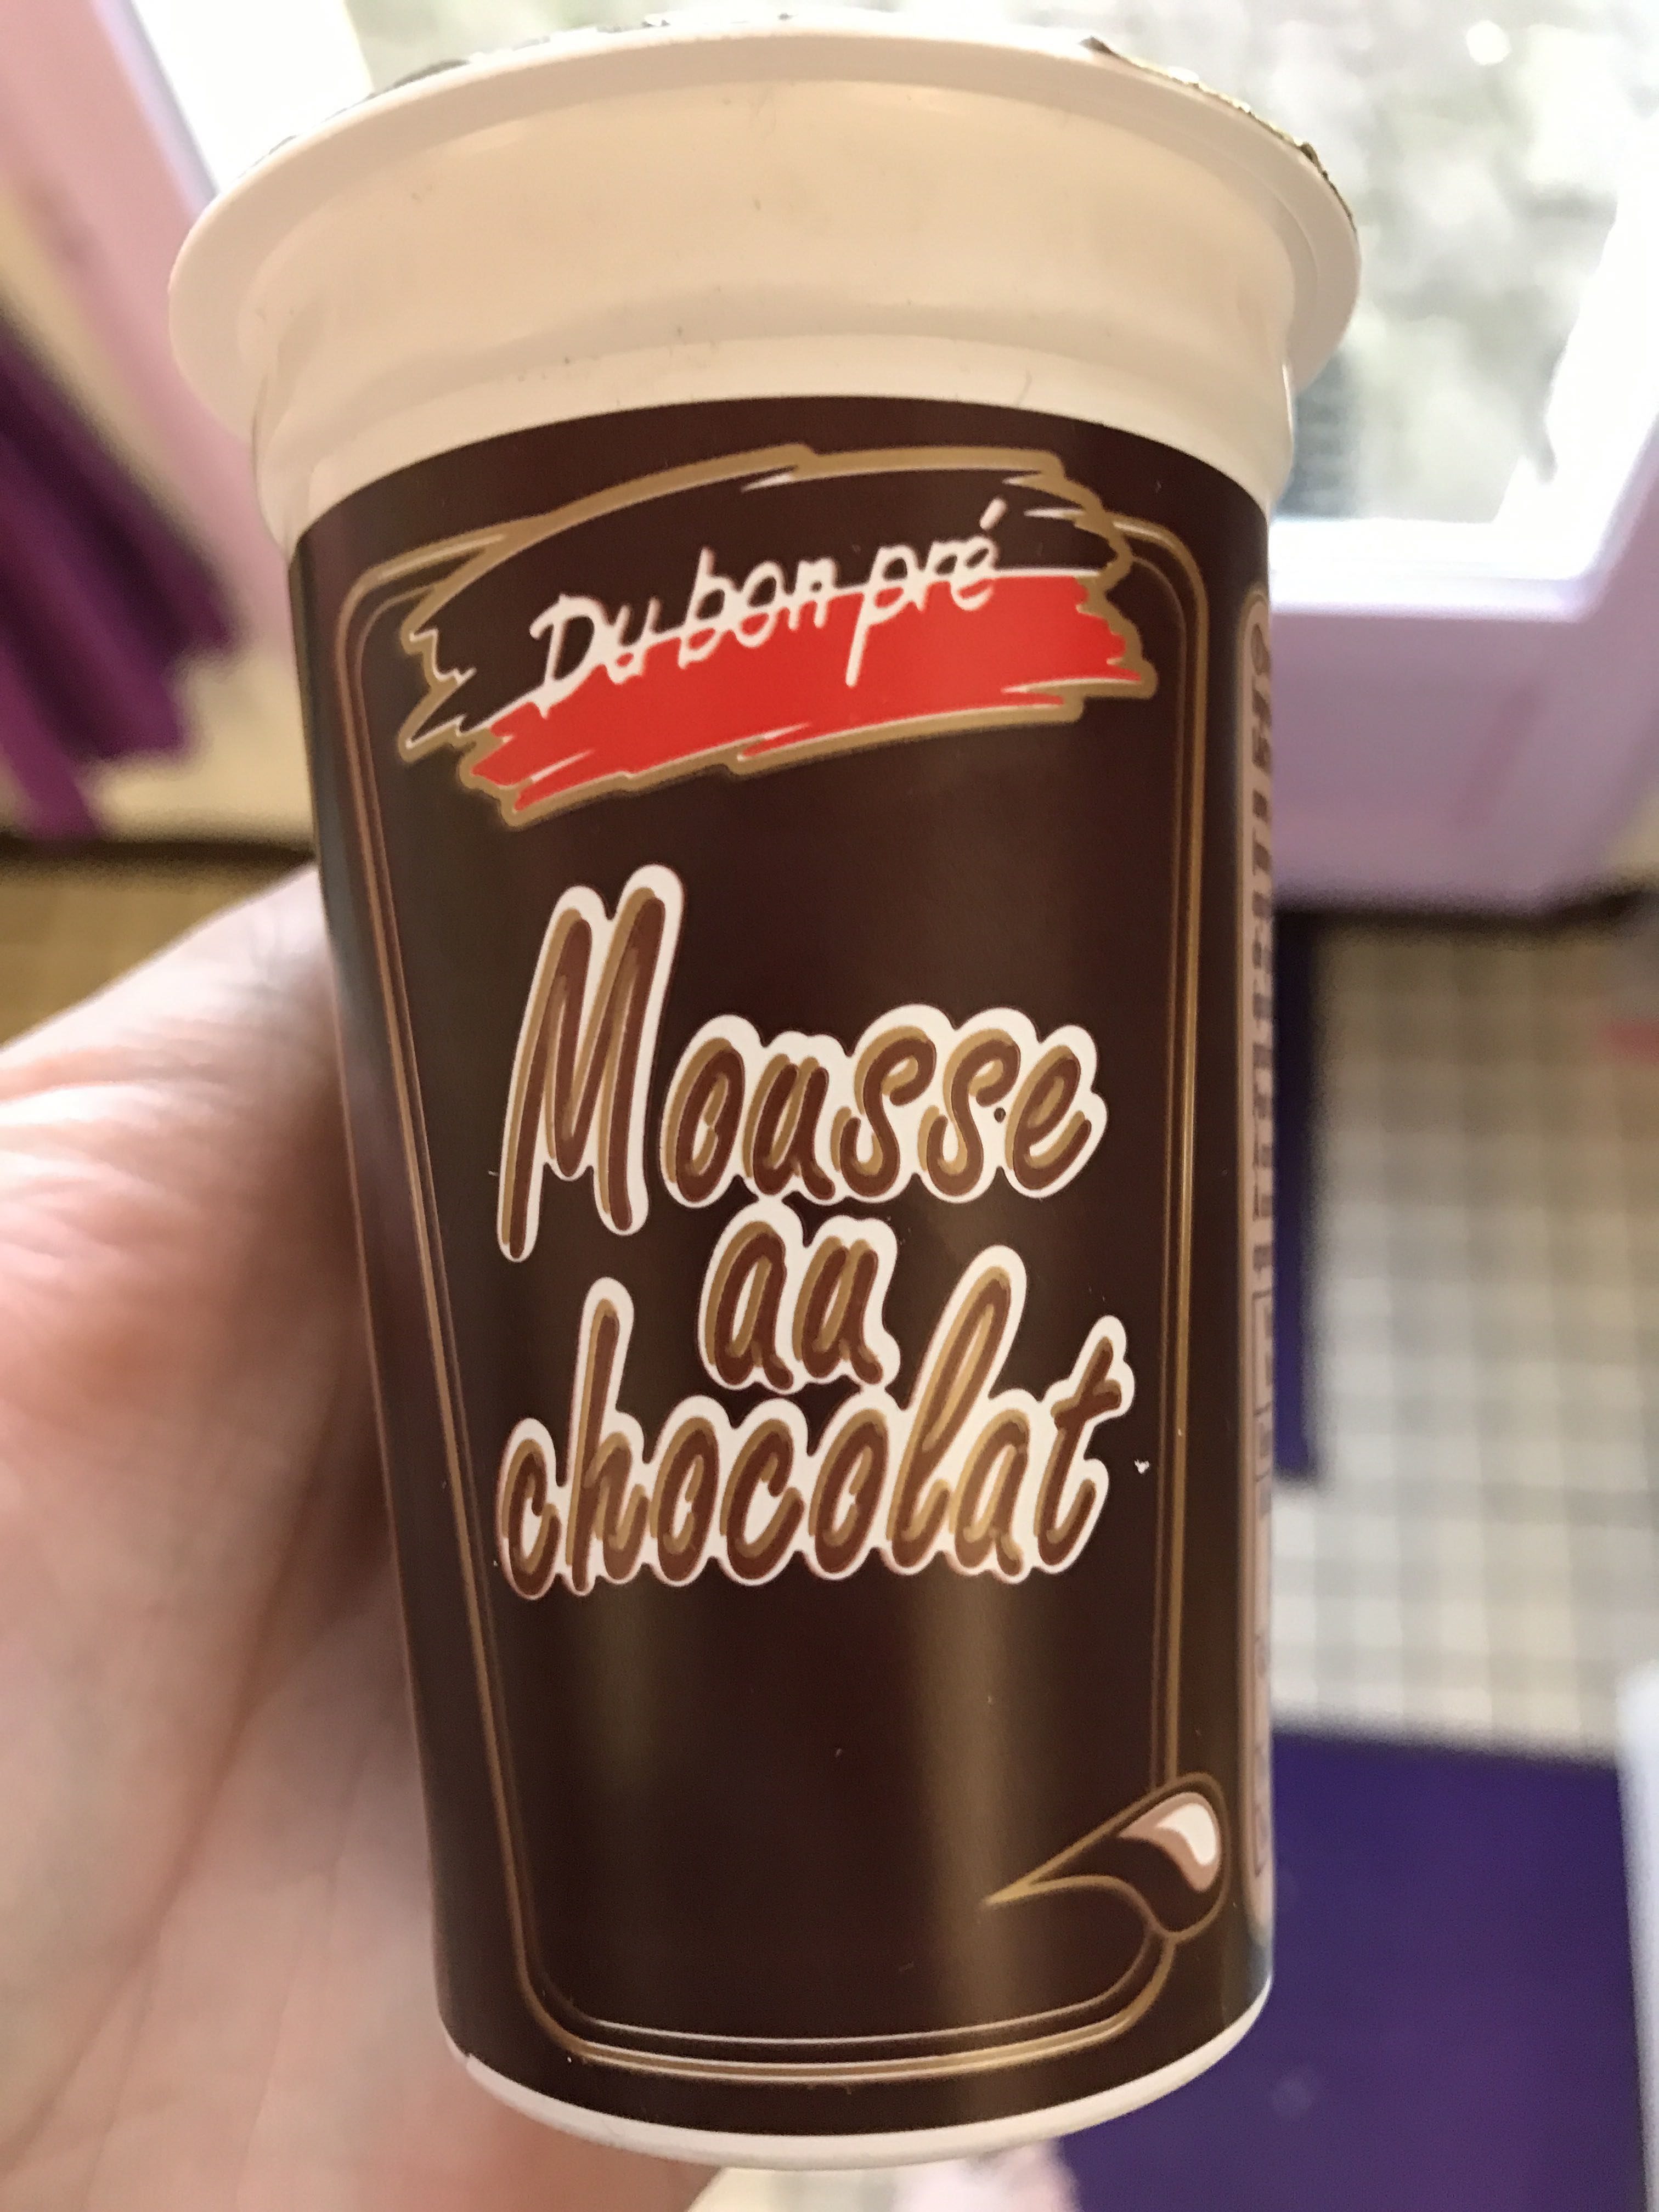 Mousse au chocolat - Producto - fr